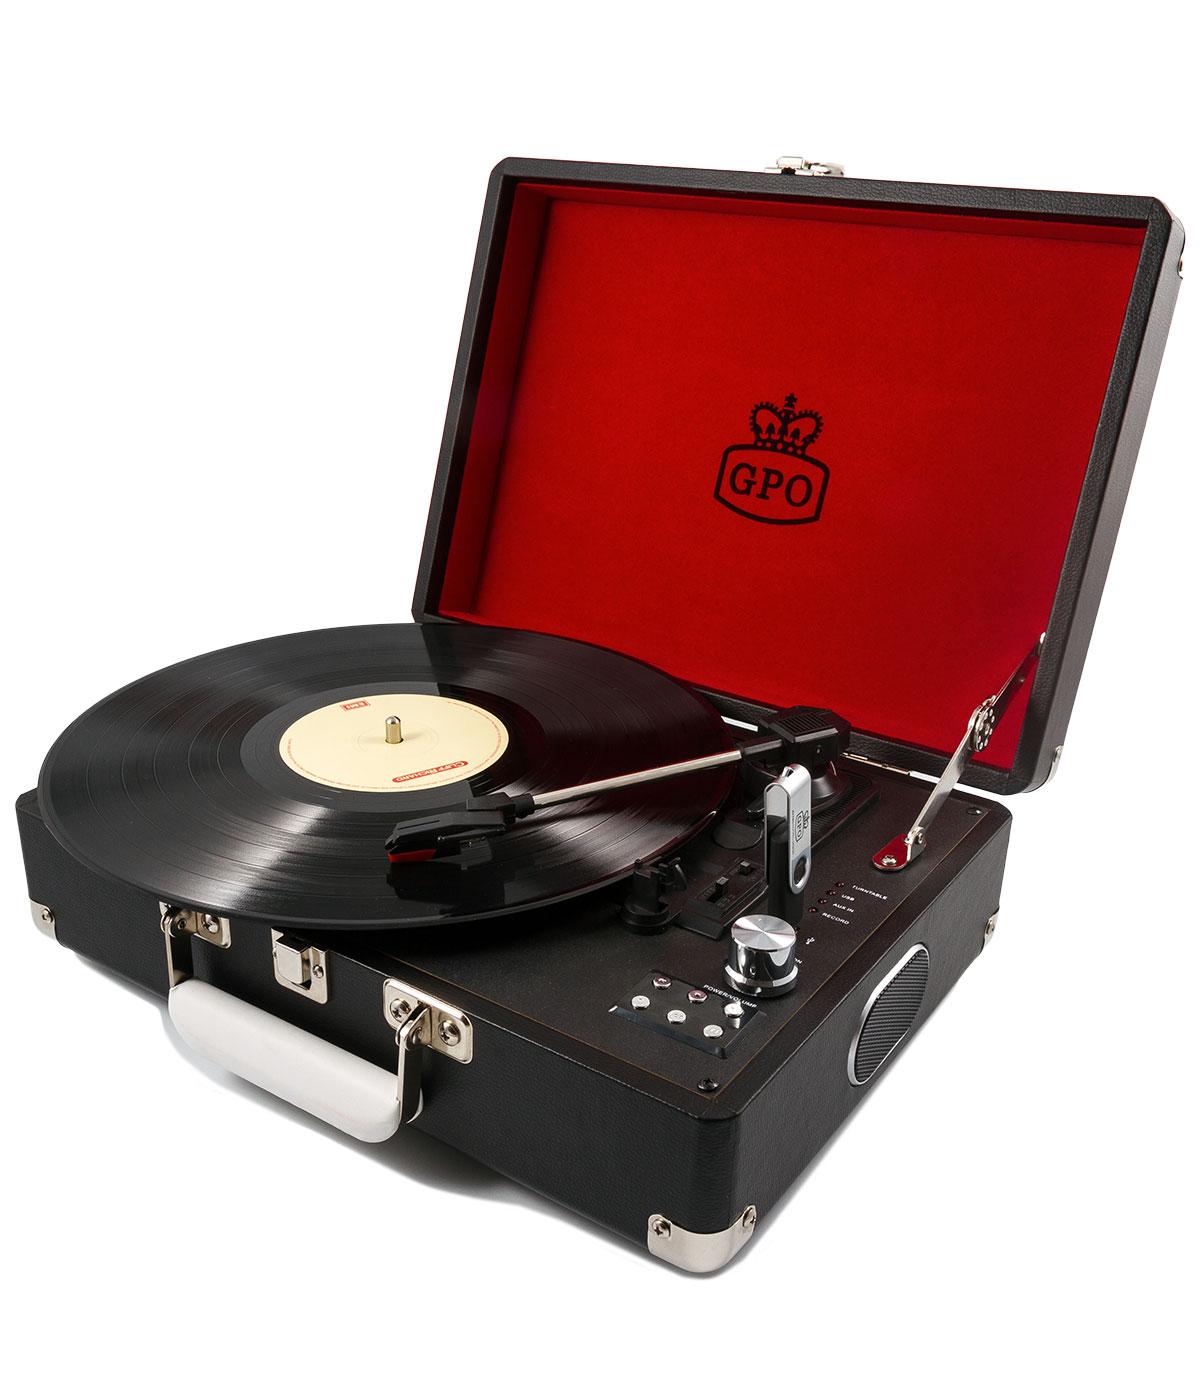 GPO RETRO 1960s Mod Attache Case Vinyl Record Player in Black